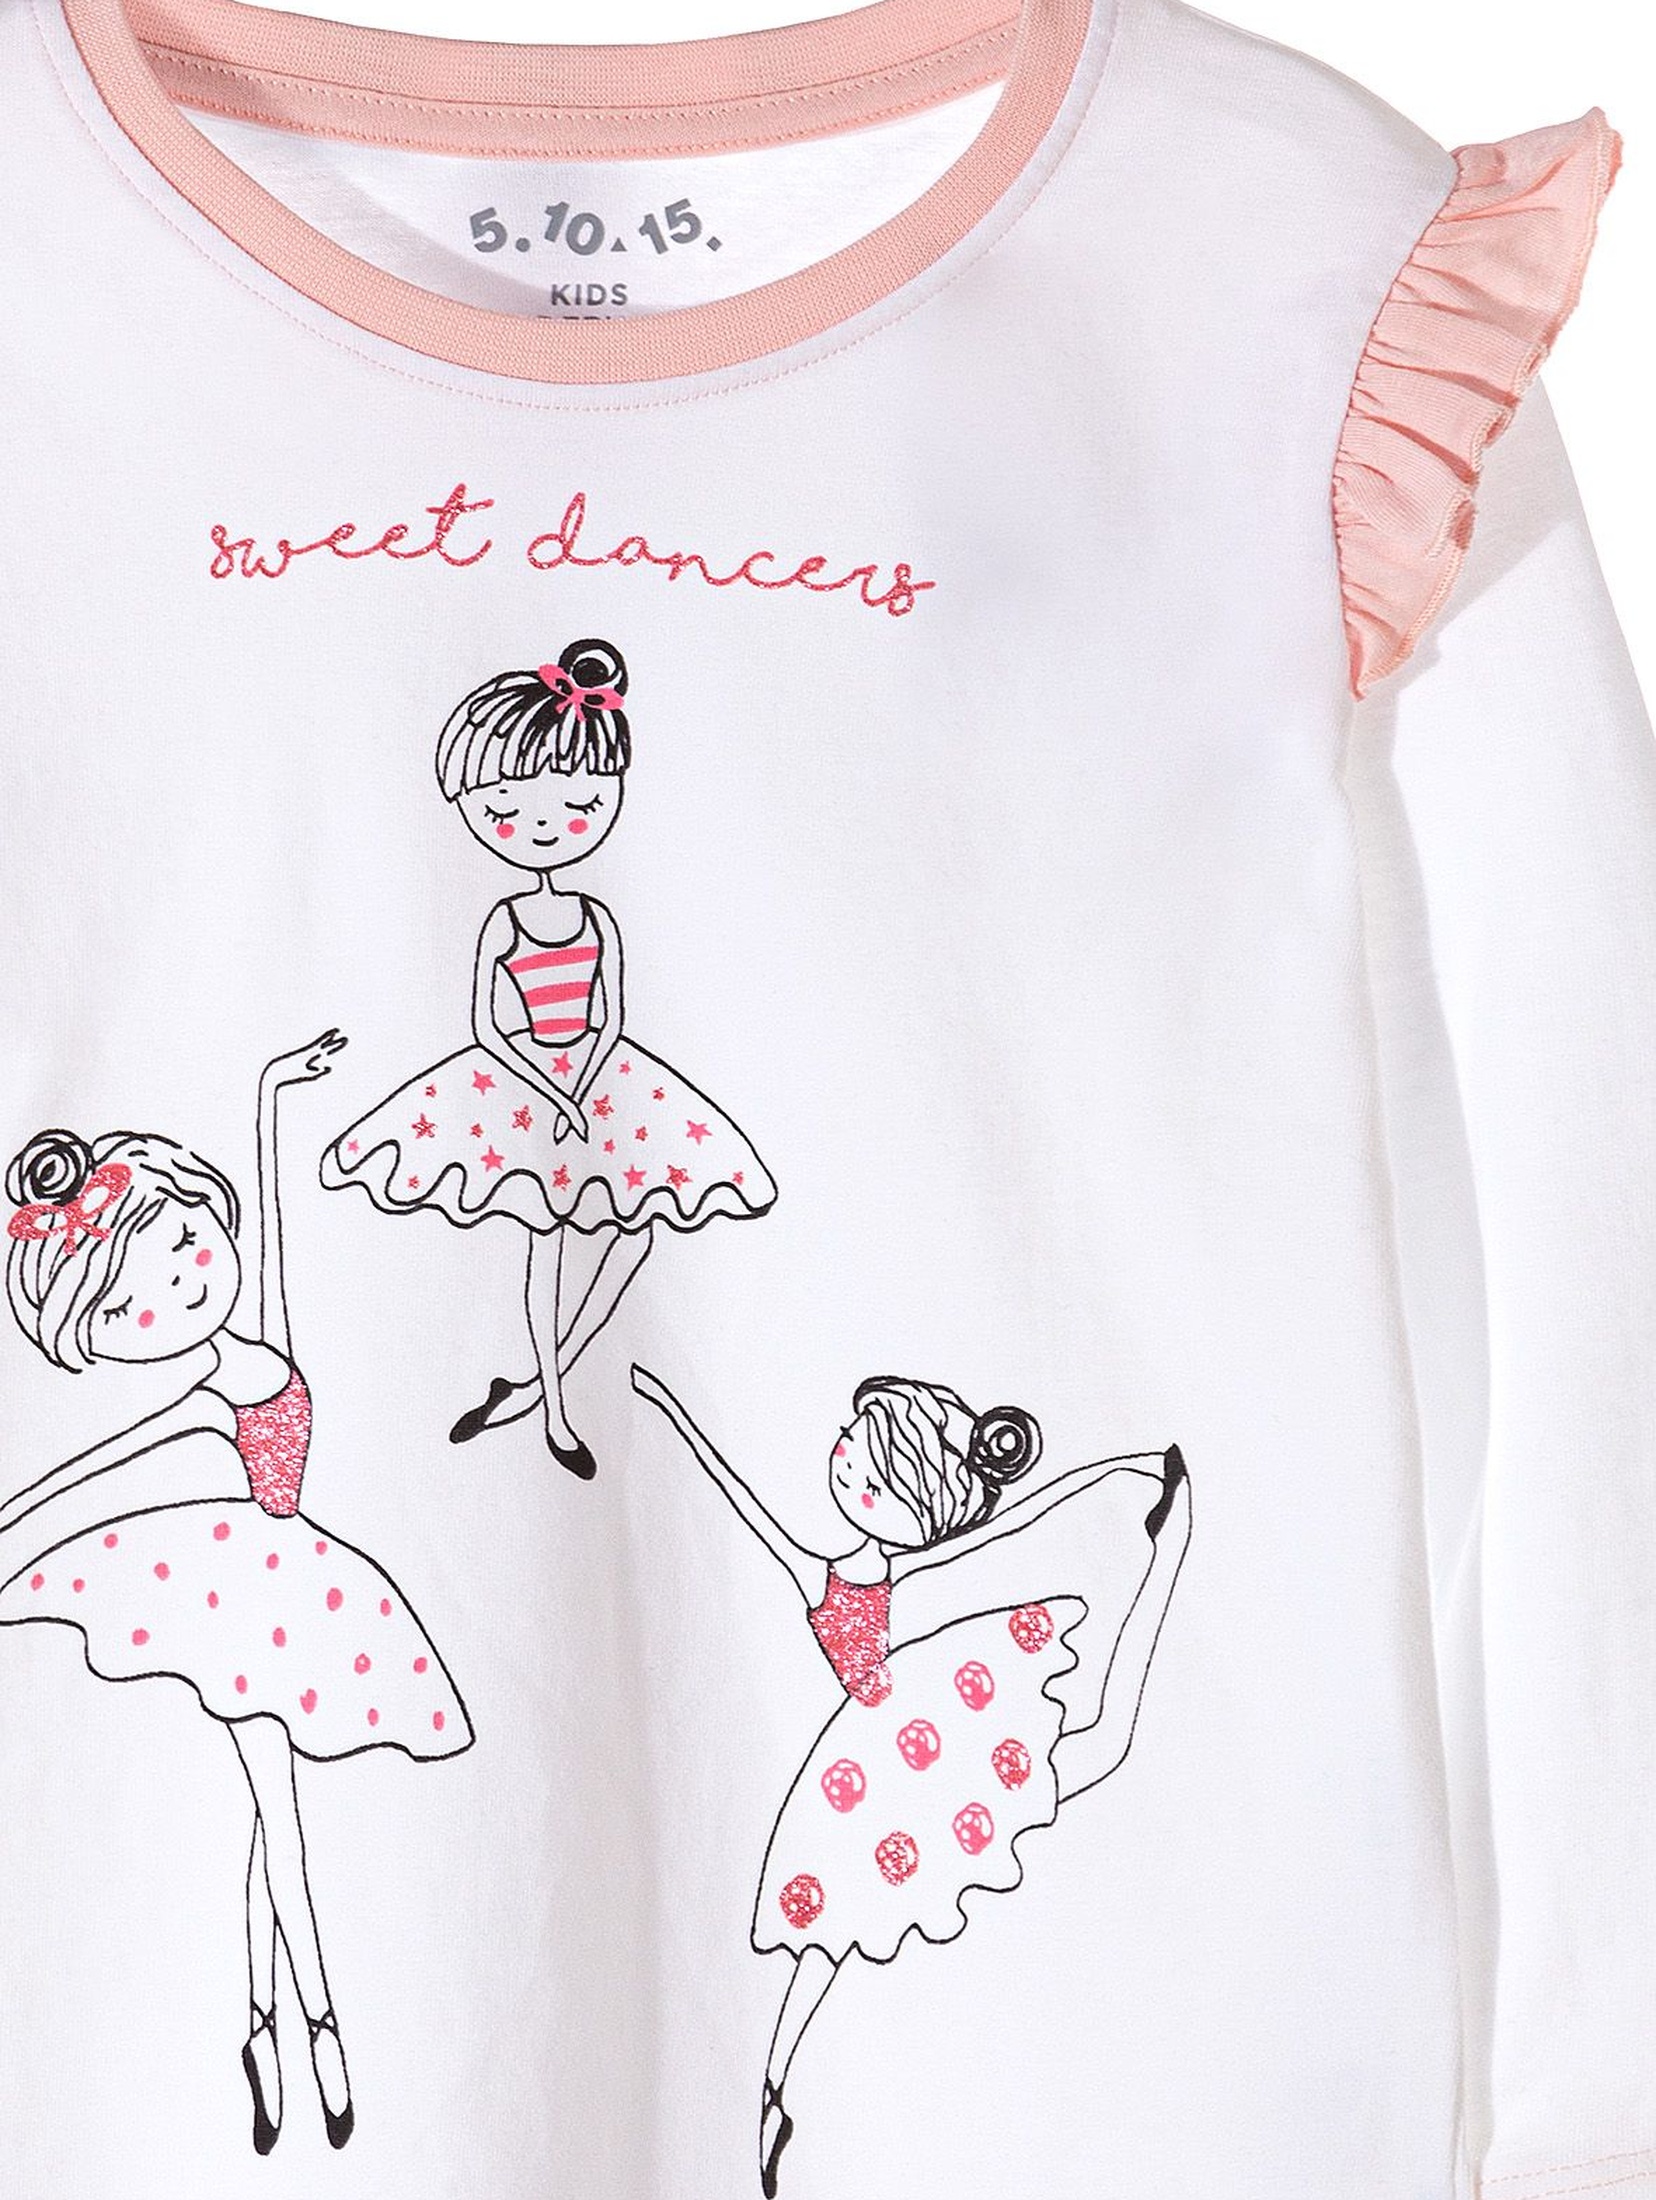 Piżama dla dziewczynki- baletnice